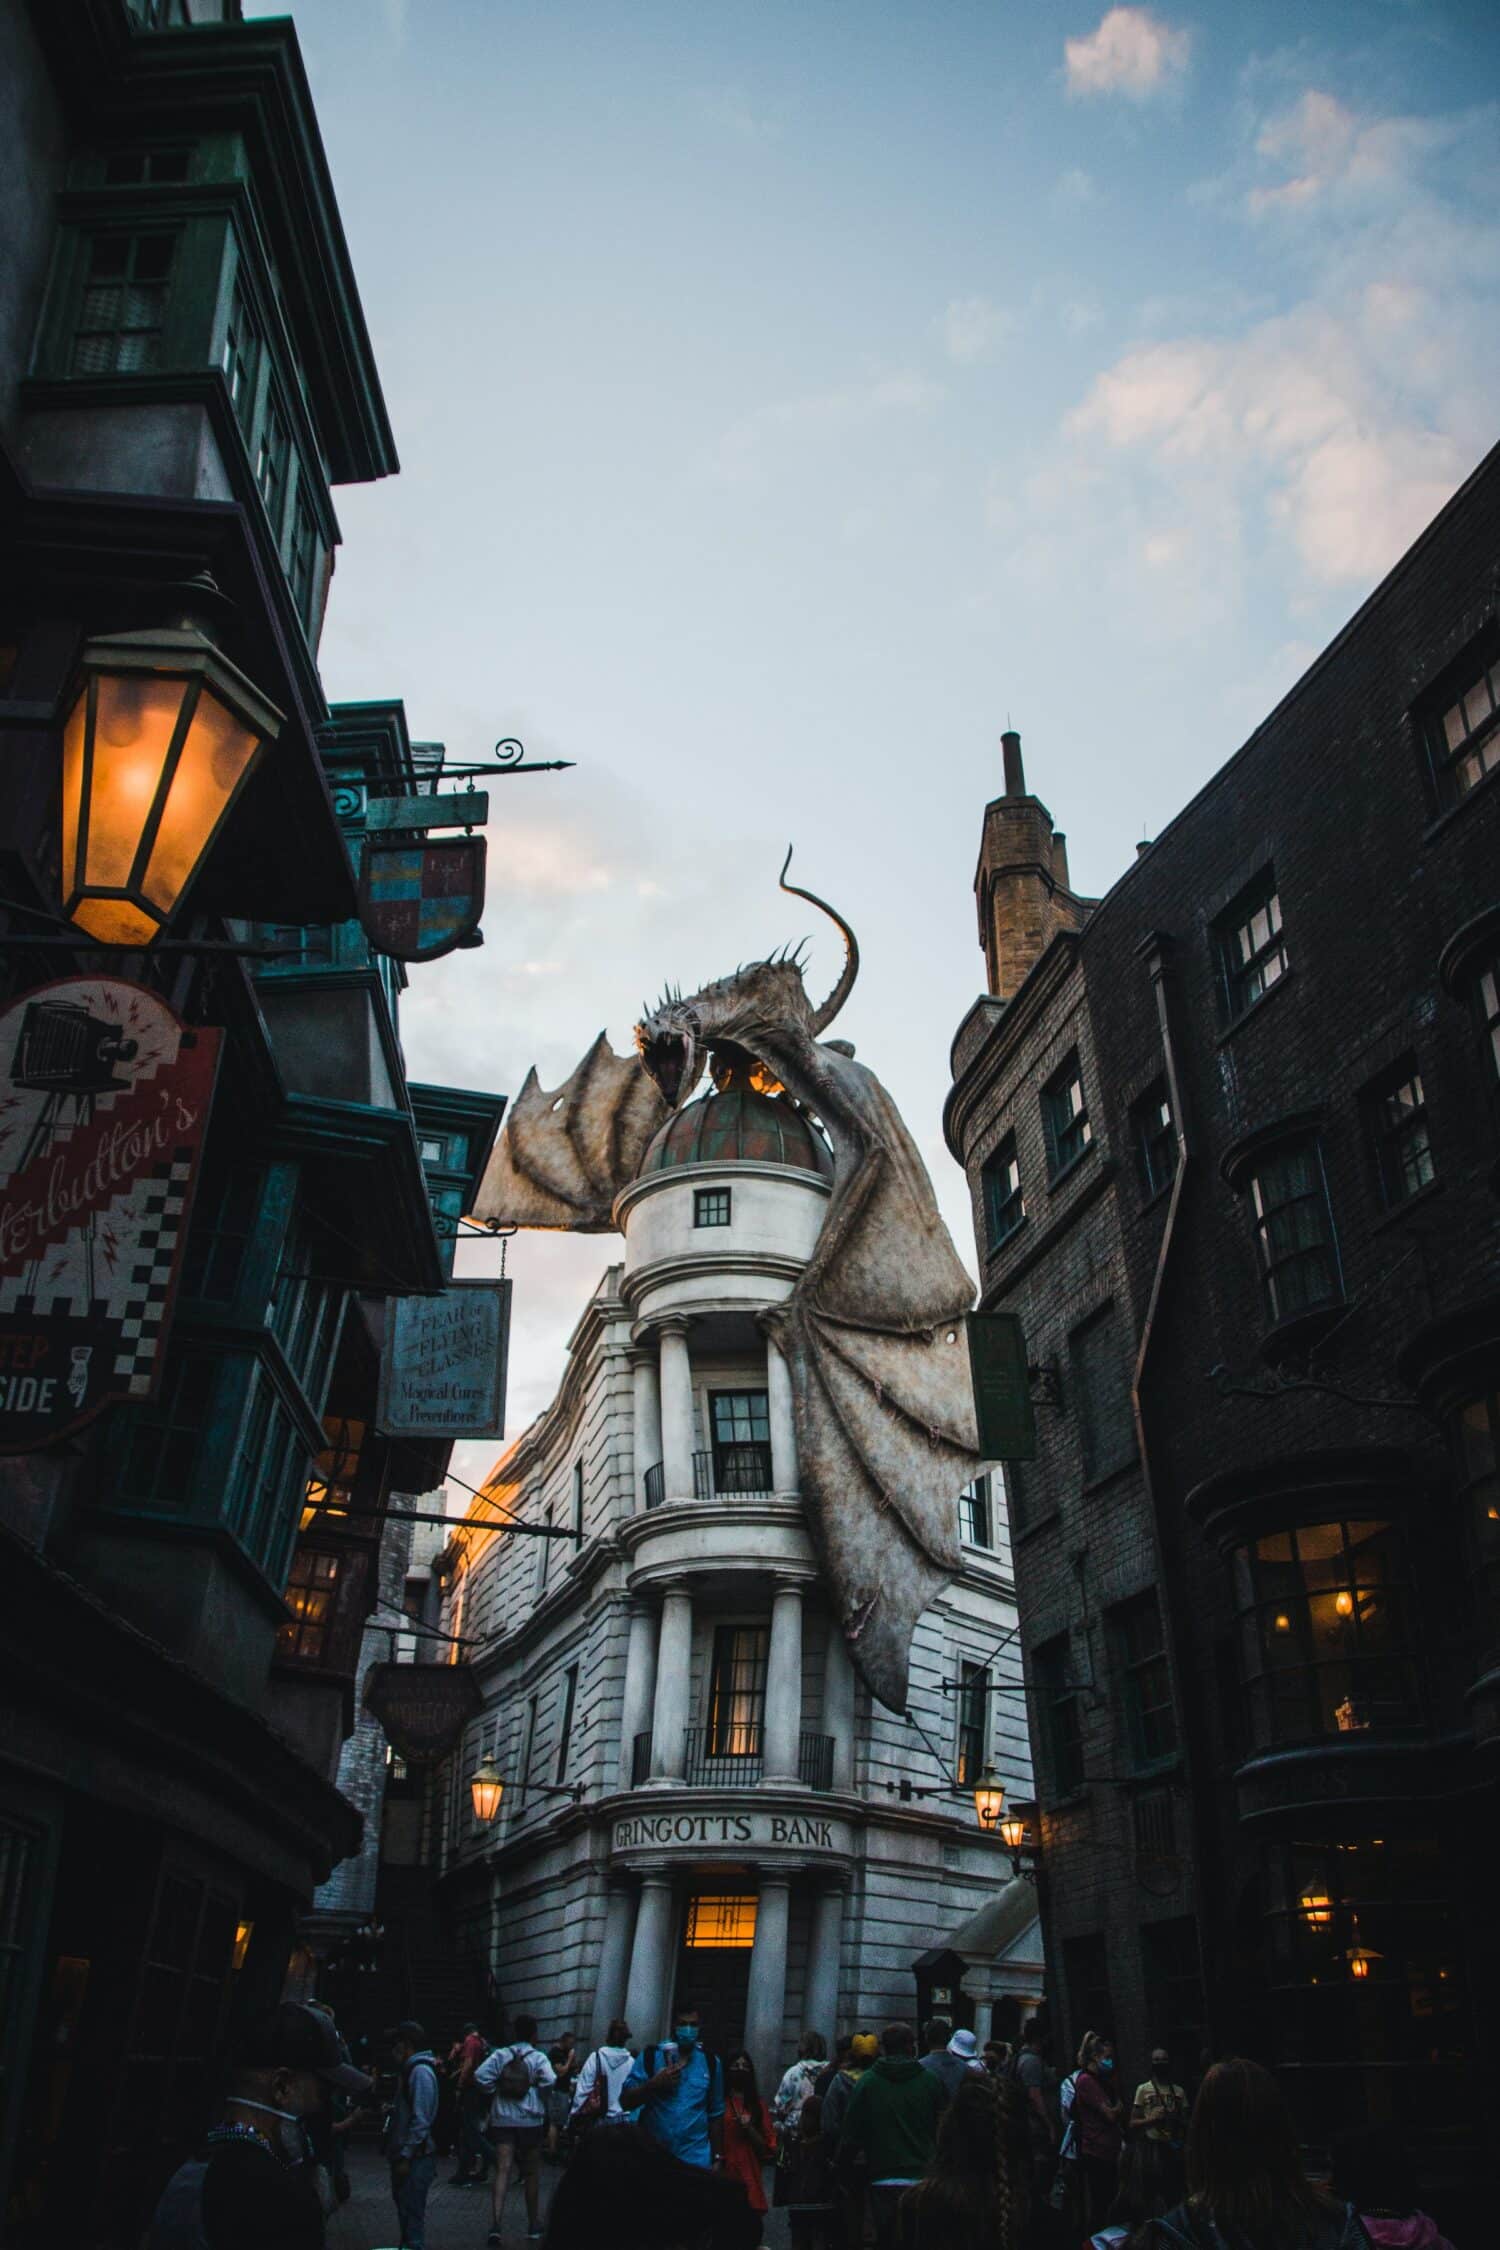 atração do Universal Studios inspirada em Harry Potter, o famoso Beco Diagonal com um dragão imenso acima de um prédio